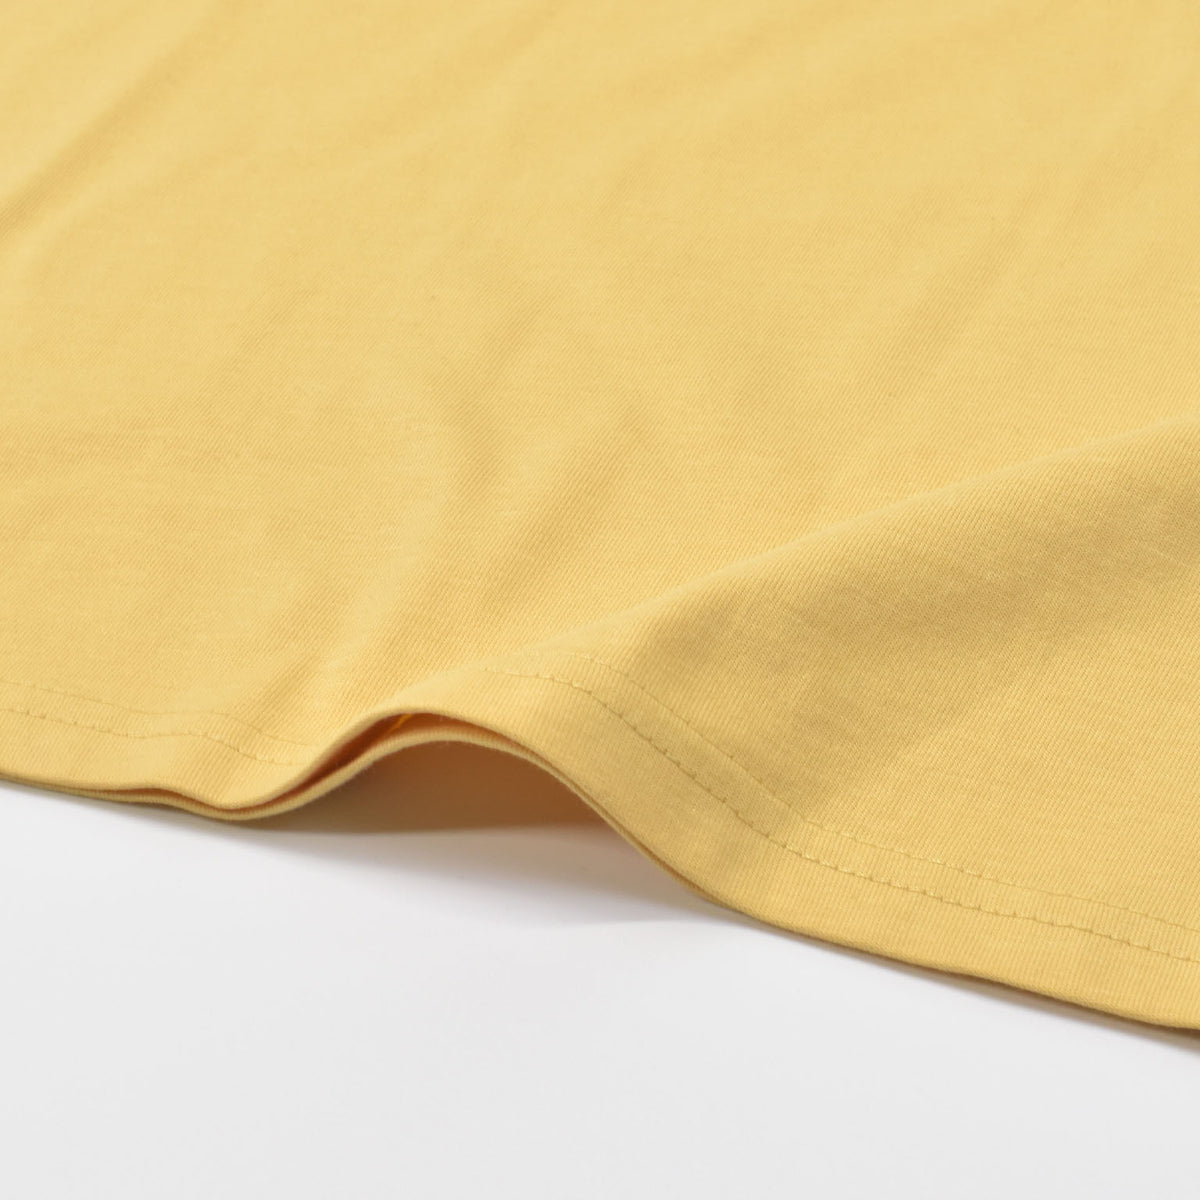 リップカール Tシャツ 半袖 オーガニックコットン サーフロゴ Rip Curl SEARCH ICON TEE 4色展開 (CTESV9)